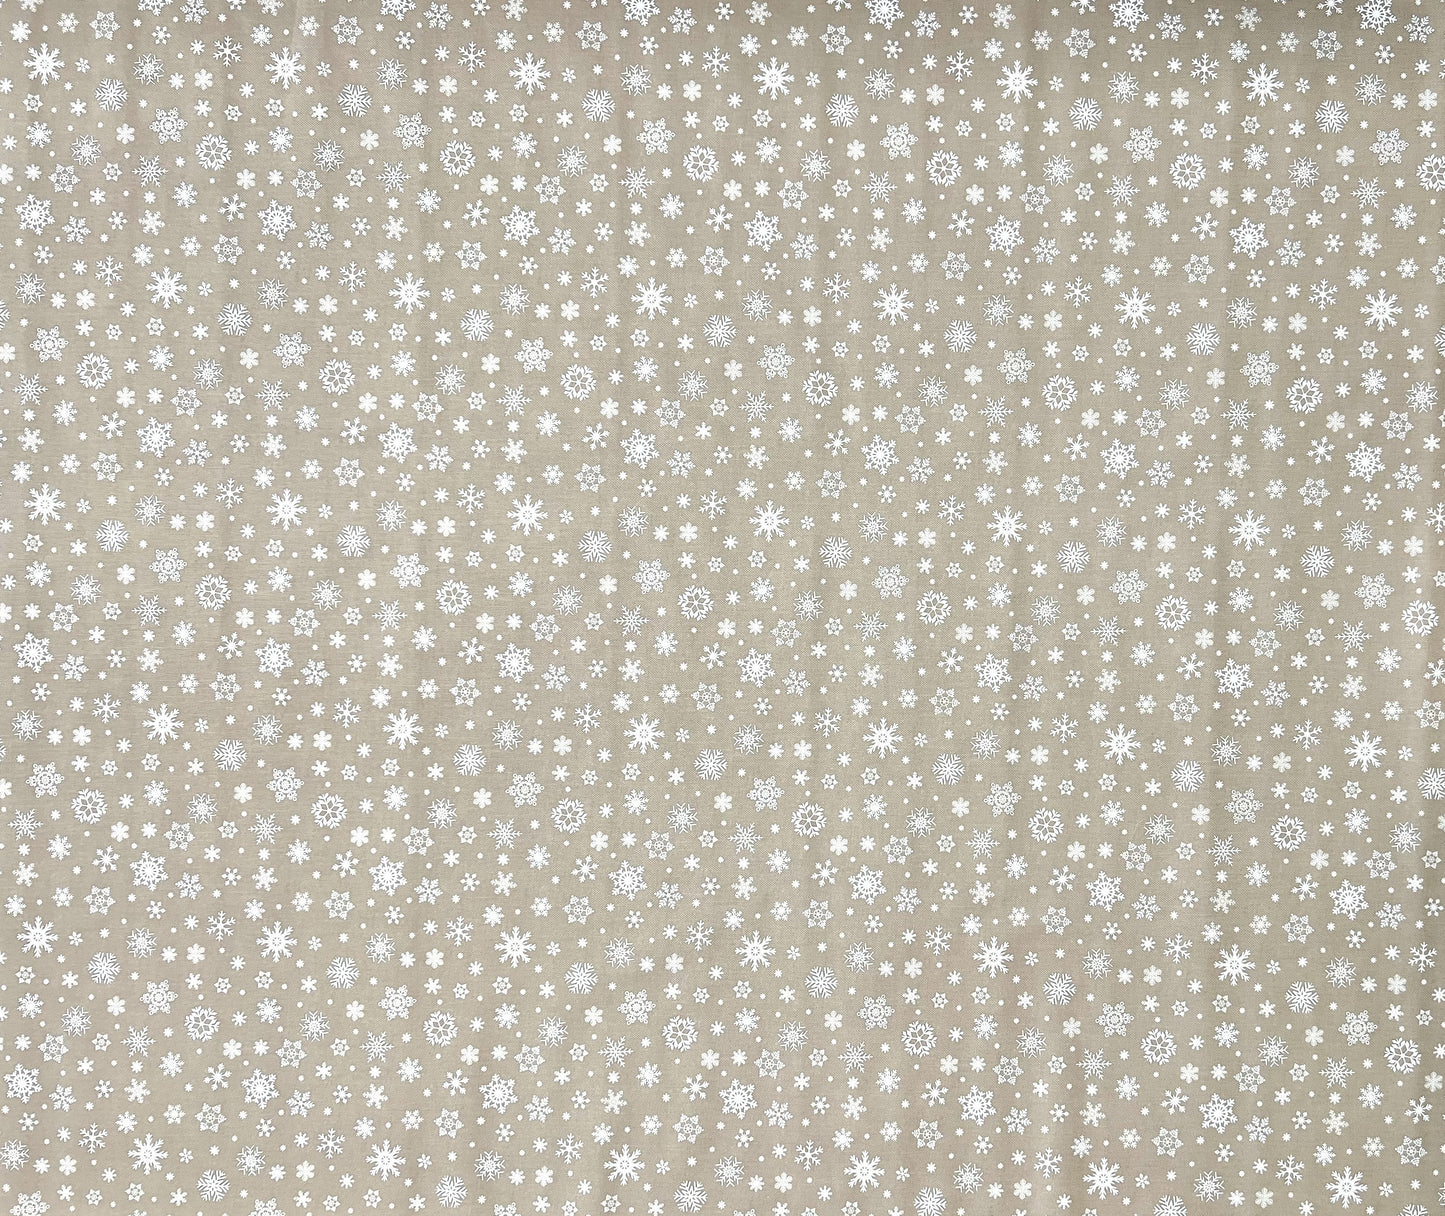 Wachstuch Tischdecke geprägt Weihnachten P1096-05 Schneeflocken auf beige eckig rund oval